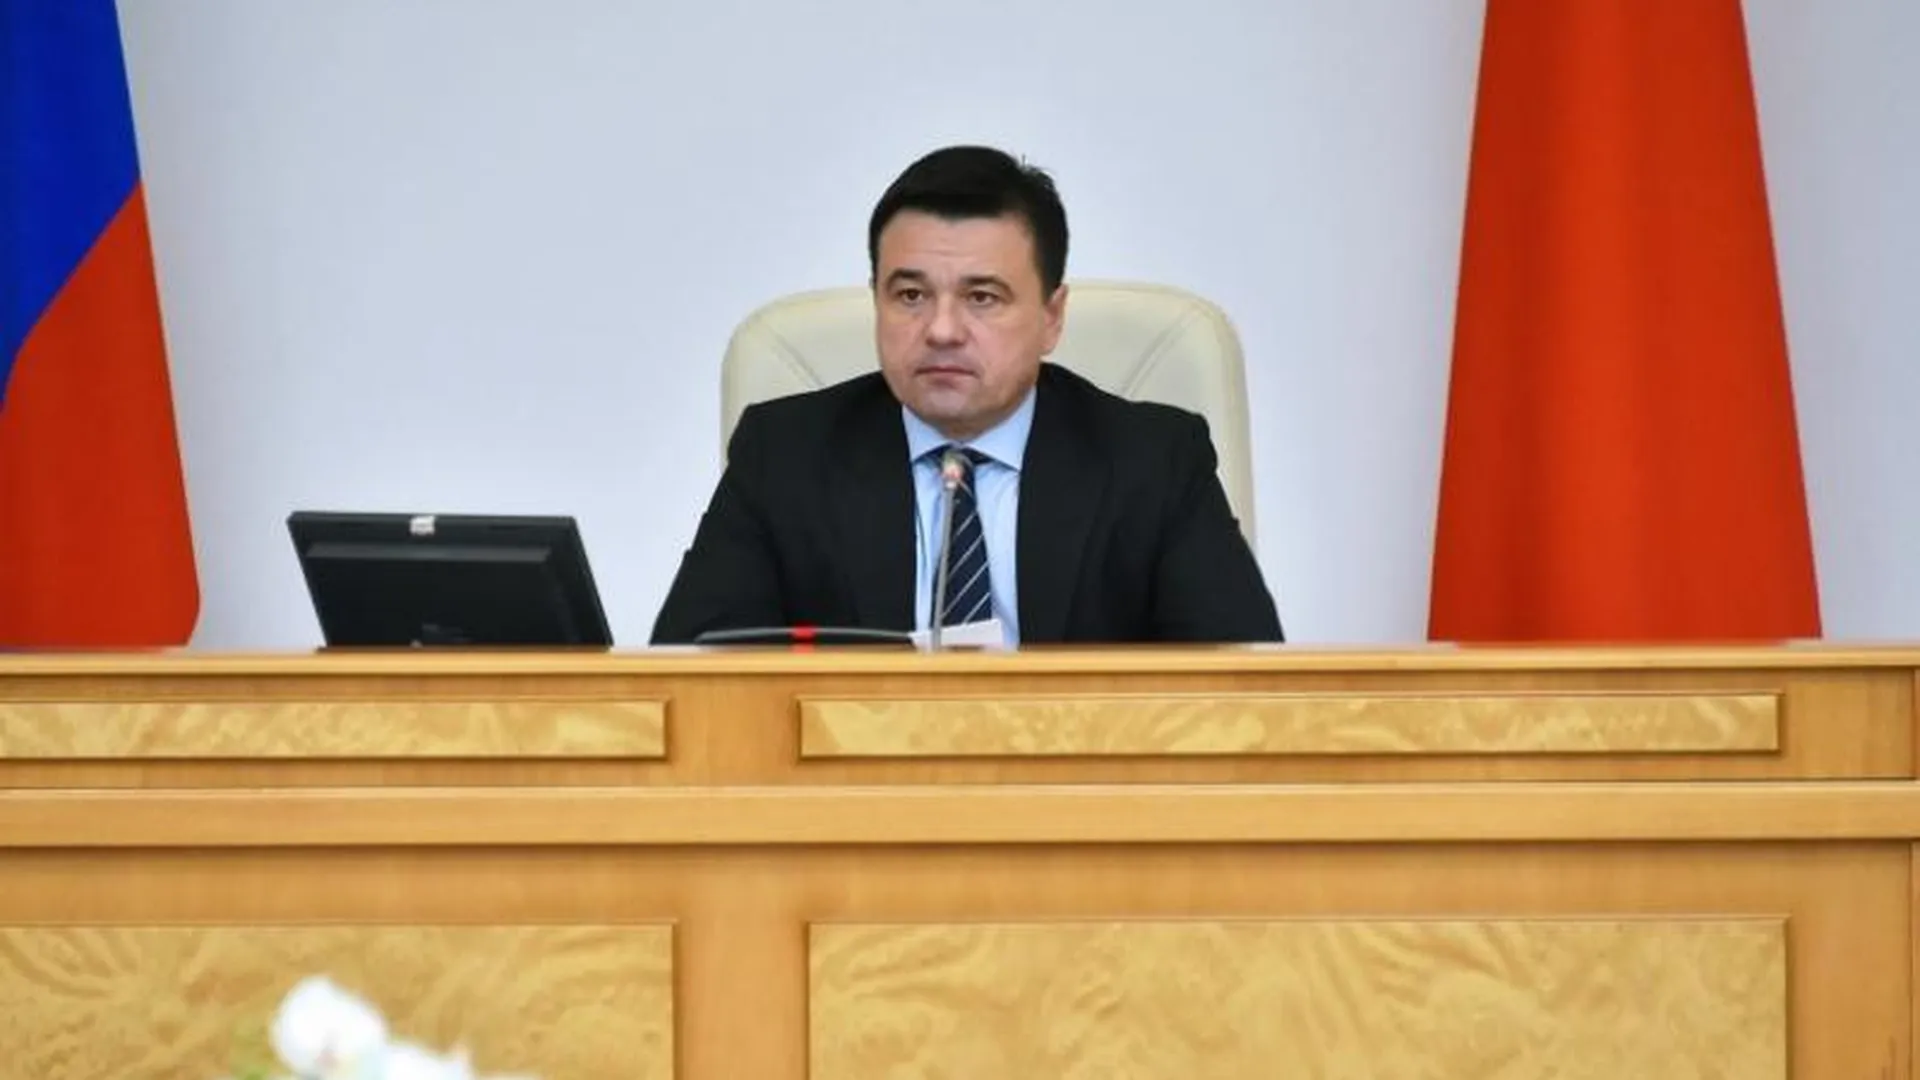 Новый министр экономики и финансов Подмосковья Михаил Ан представлен правительству региона